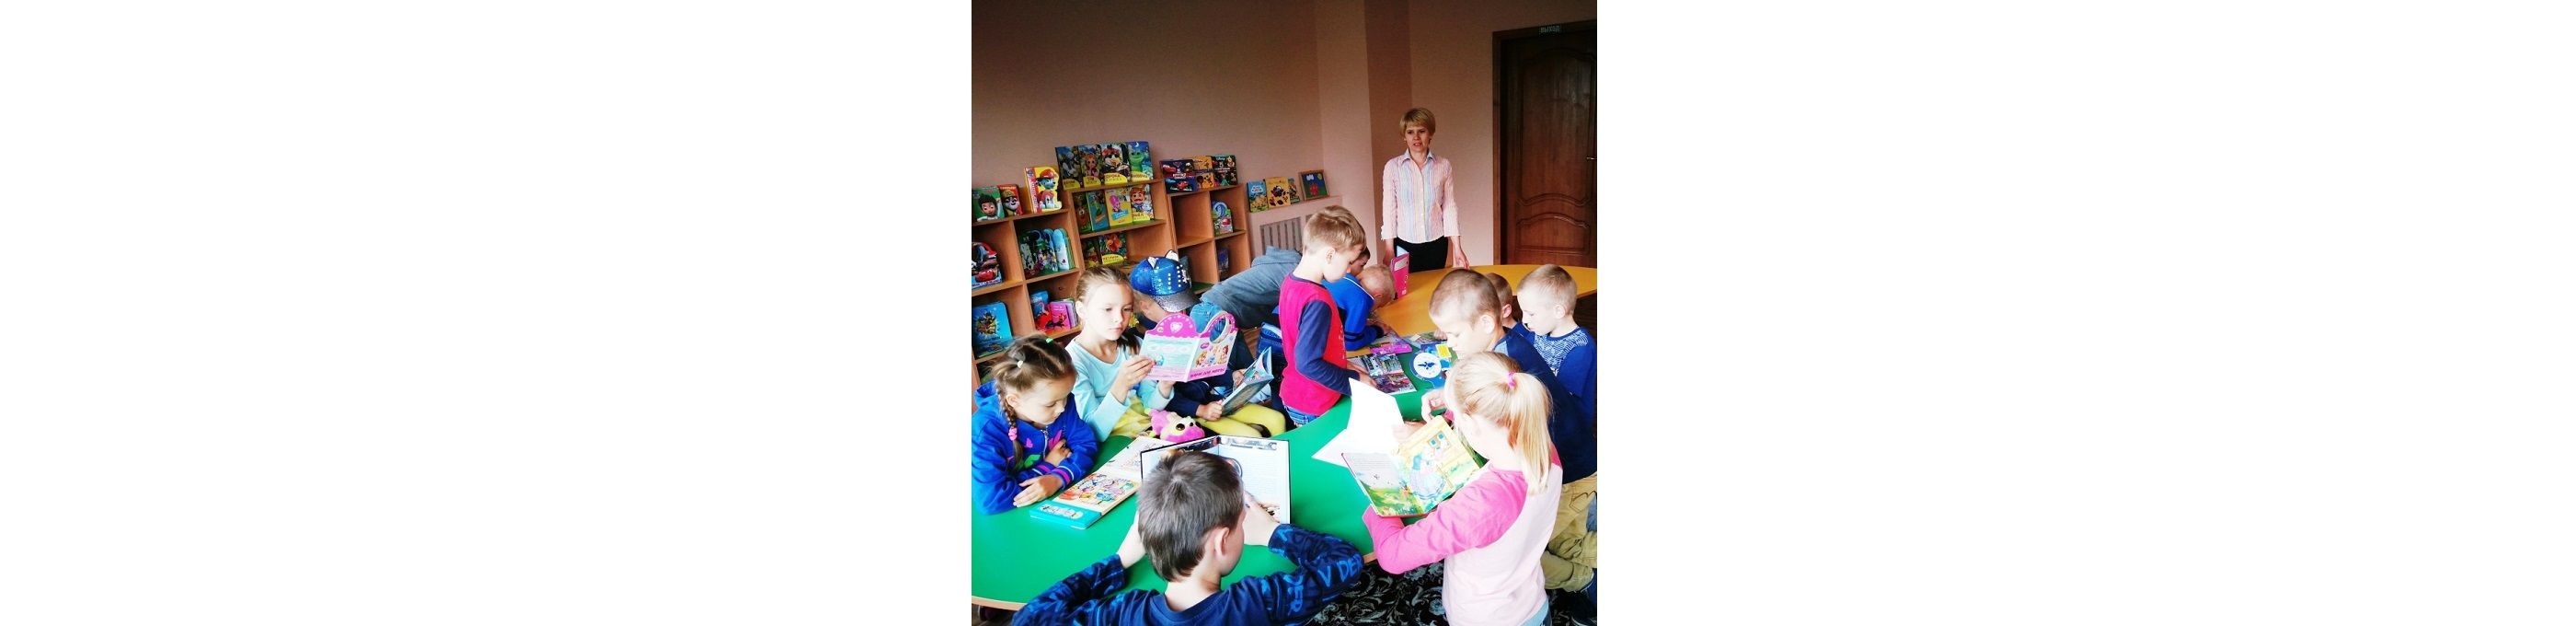 В ближайшем будущем Министерством просвещения планируется внедрение программы по экономическому воспитанию в детских садах